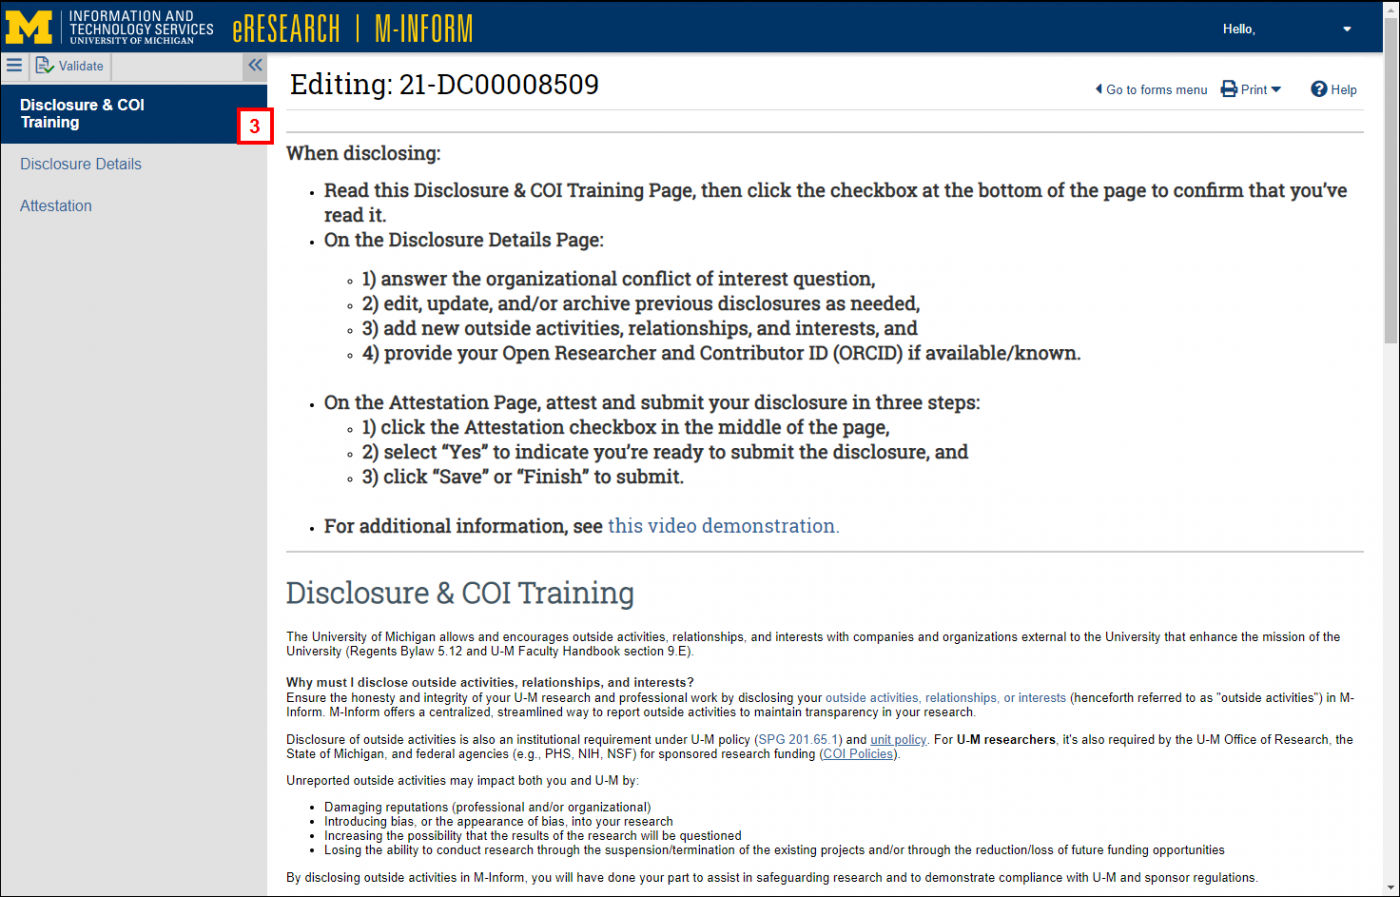 Disclosure & COI Training